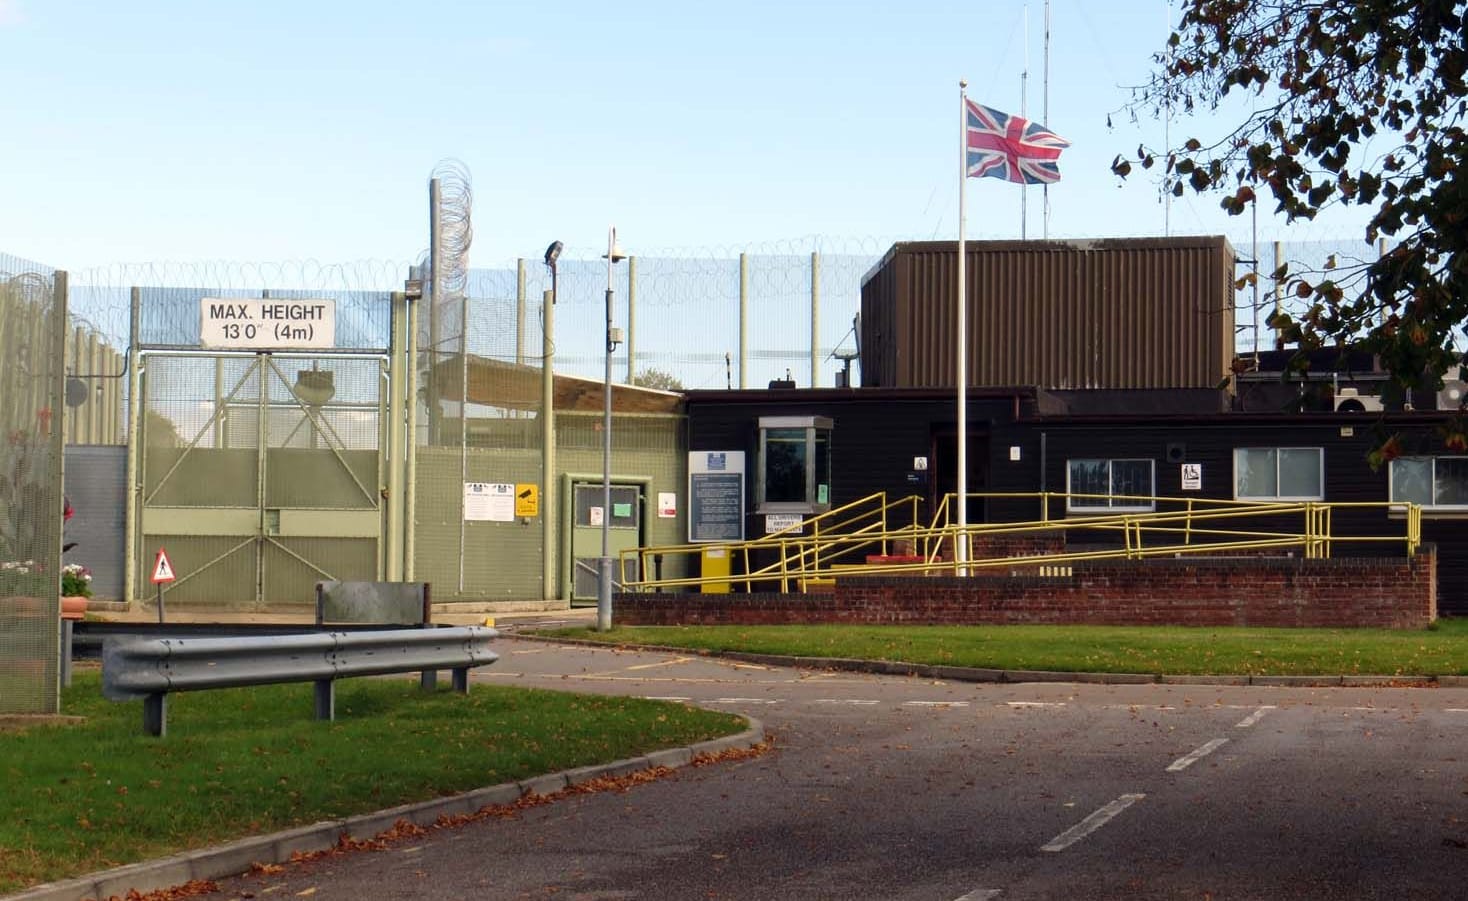 Huntercombe: Der Eingang des Gefängnisses, das etwa 70 Kilometer außerhalb von London liegt.